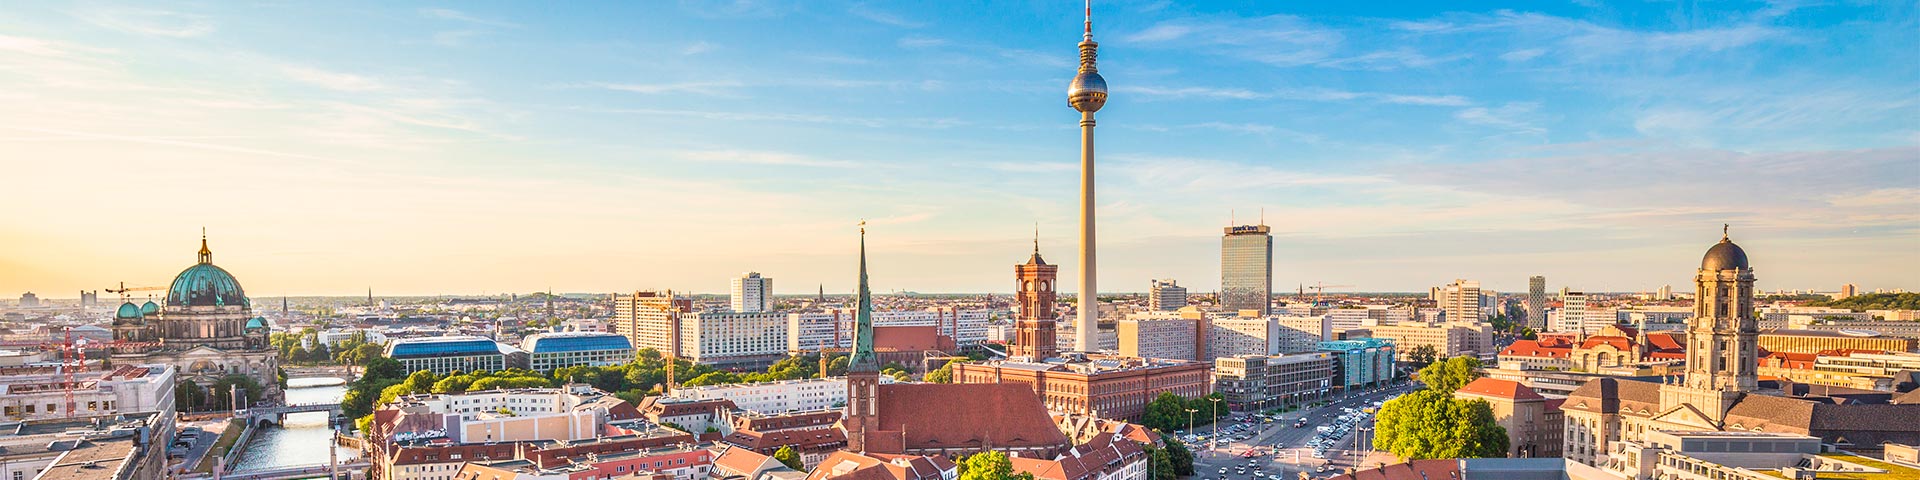 Übersetzungsbüro Deutschland: Berliner Skyline mit Fernssehturm im Abendlicht